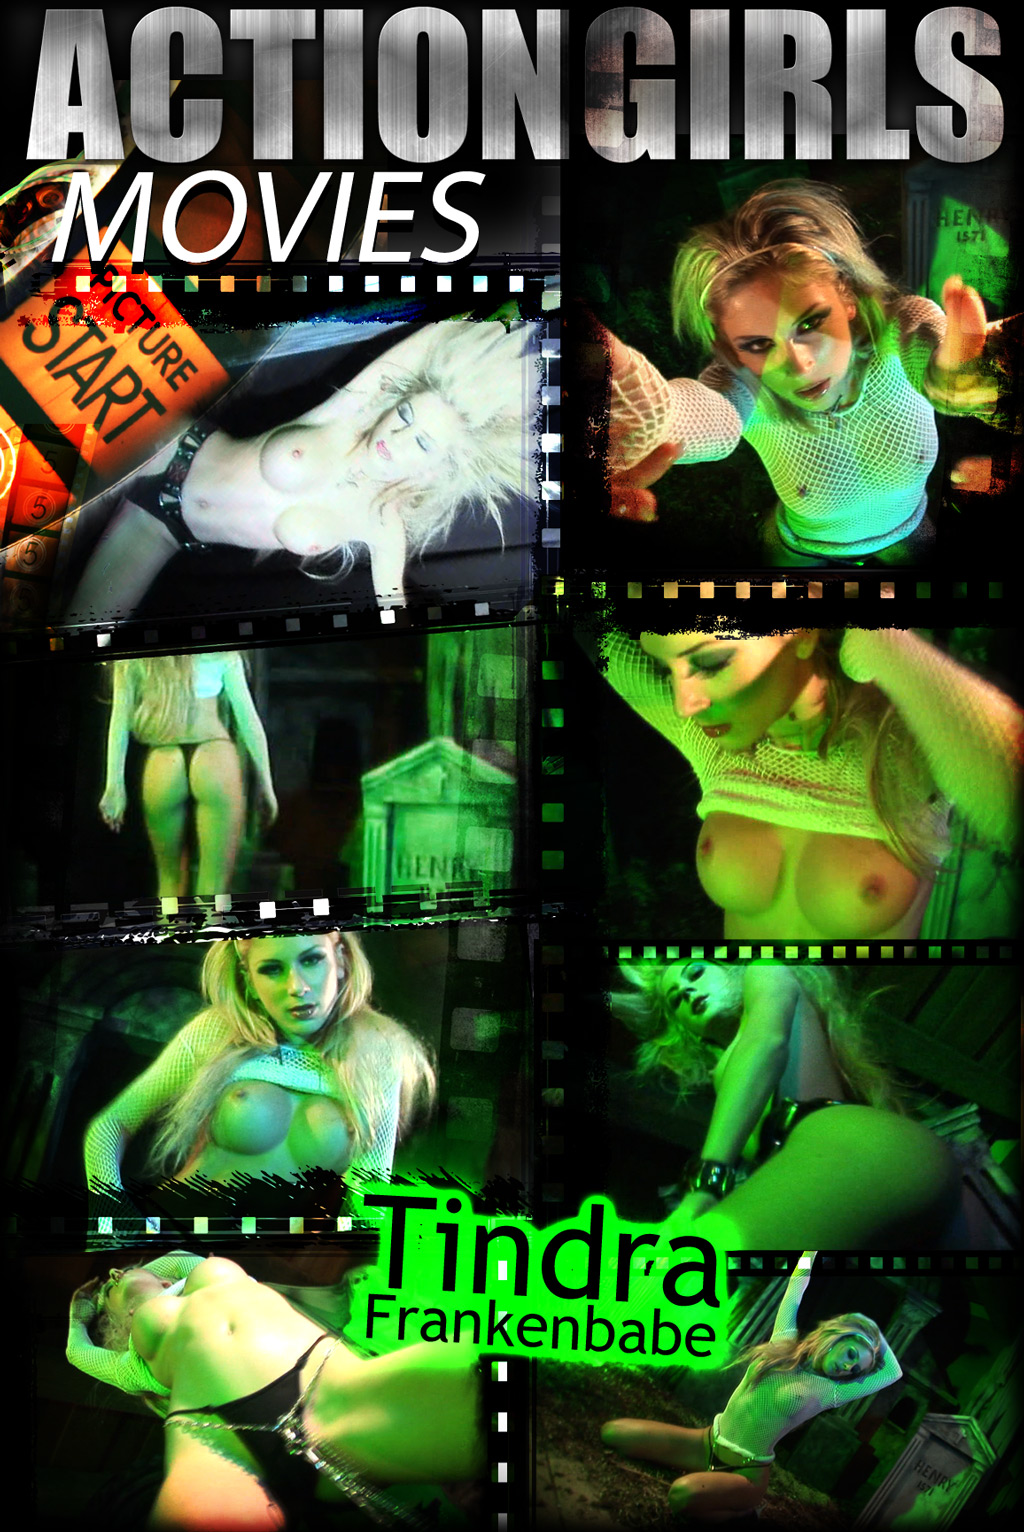 Scotty JX's Tindra Frankenbabe Movie